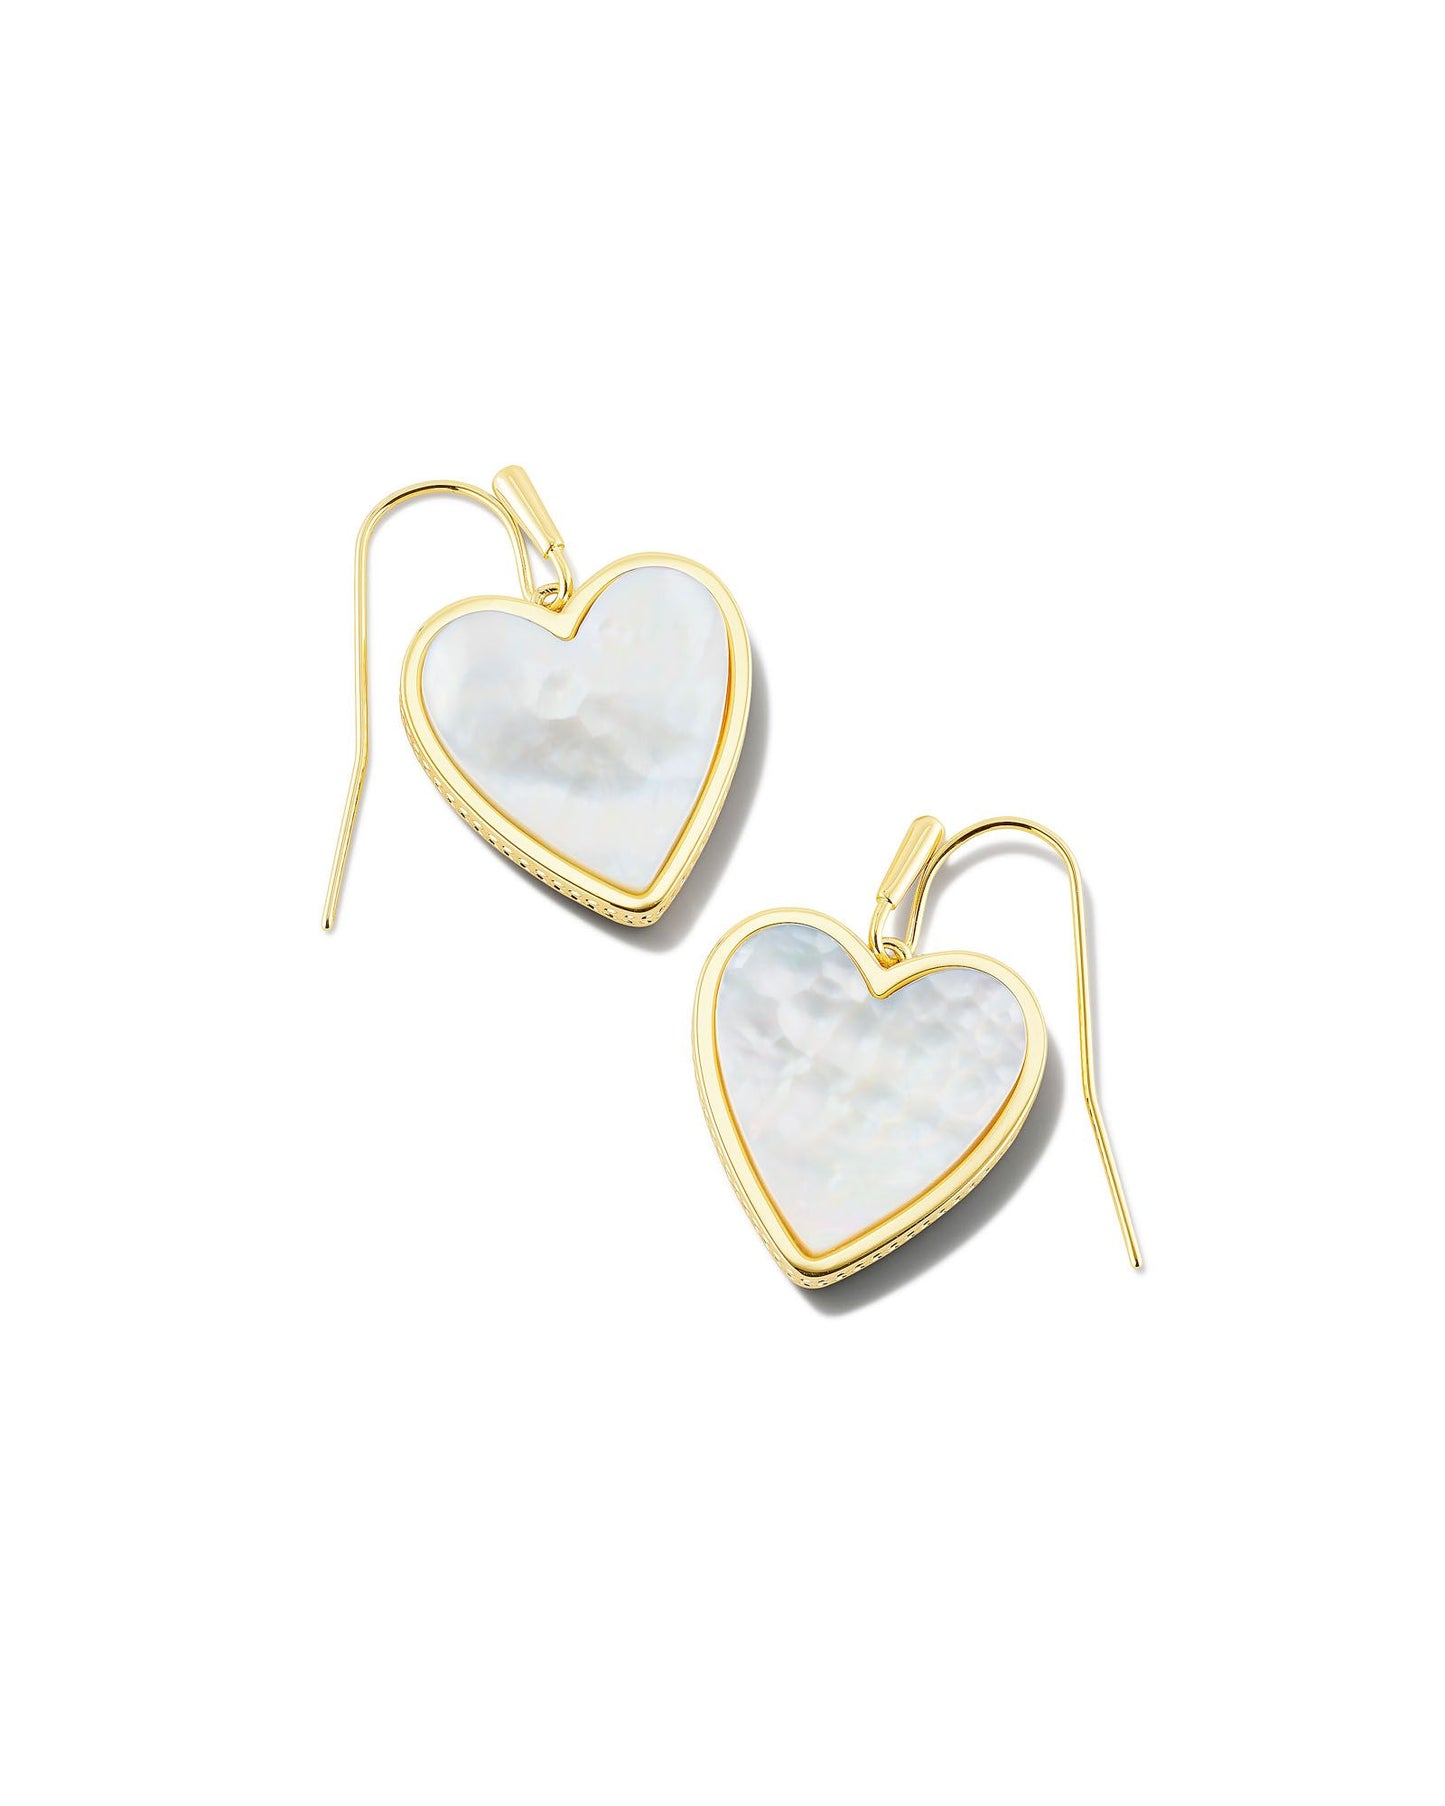 Kendra Scott Heart Drop Earrings Gold Ivory Mother of Pearl-Earrings-Kendra Scott-E1991GLD-The Twisted Chandelier